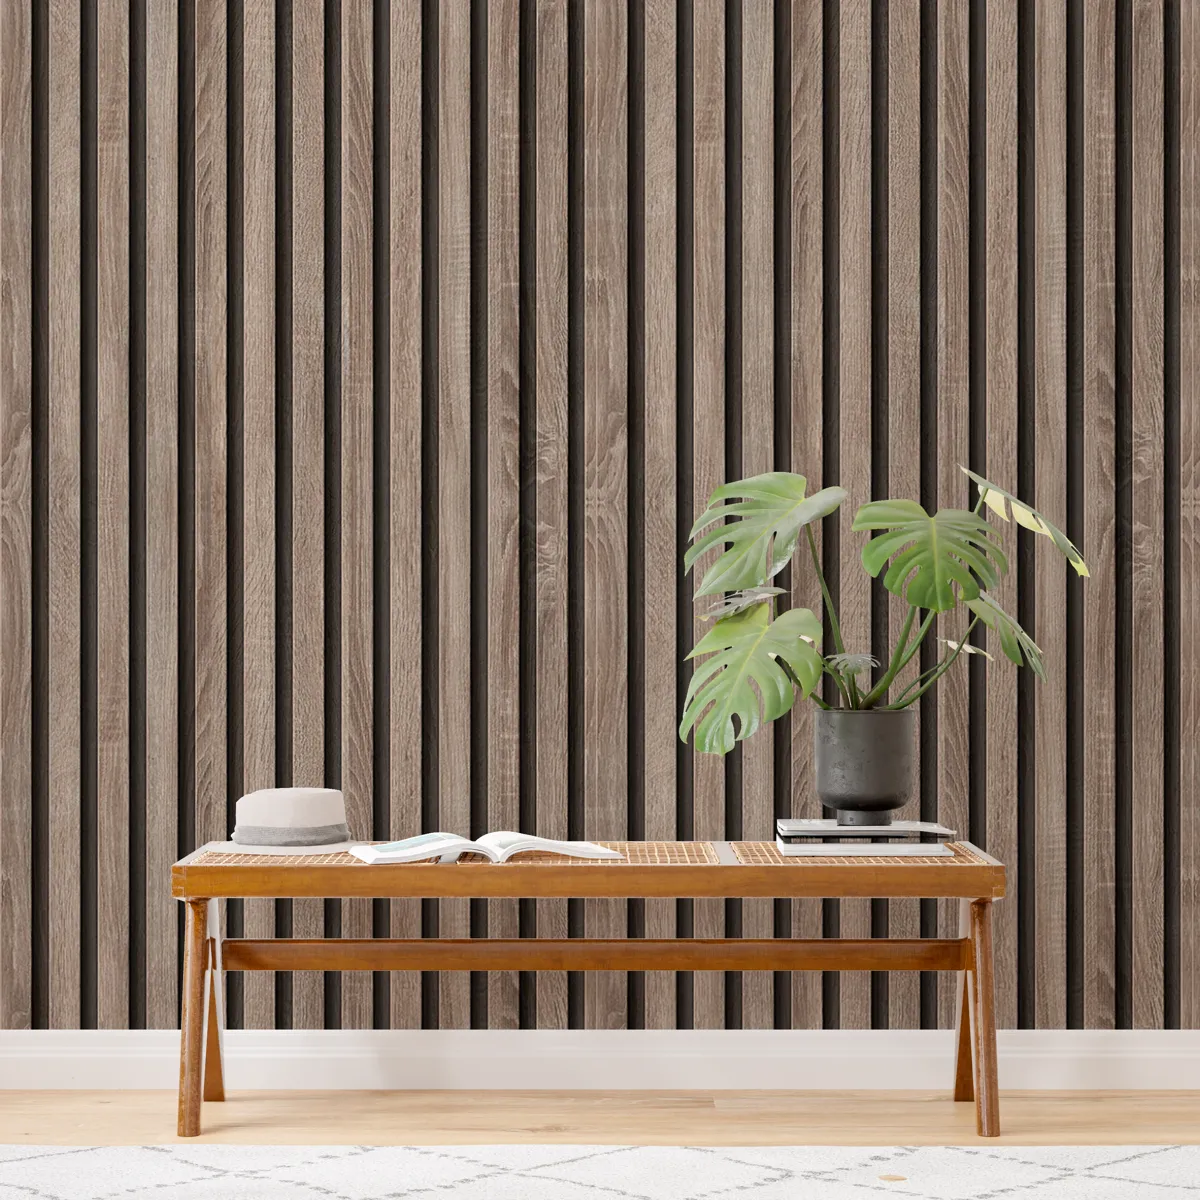 Papeis de Parede Ripado Comprar papel de parede de tabua de madeira papel de parede para madeira papeis de parede ripado papel de parede ripado para cozinha adesivo de parede cozinha